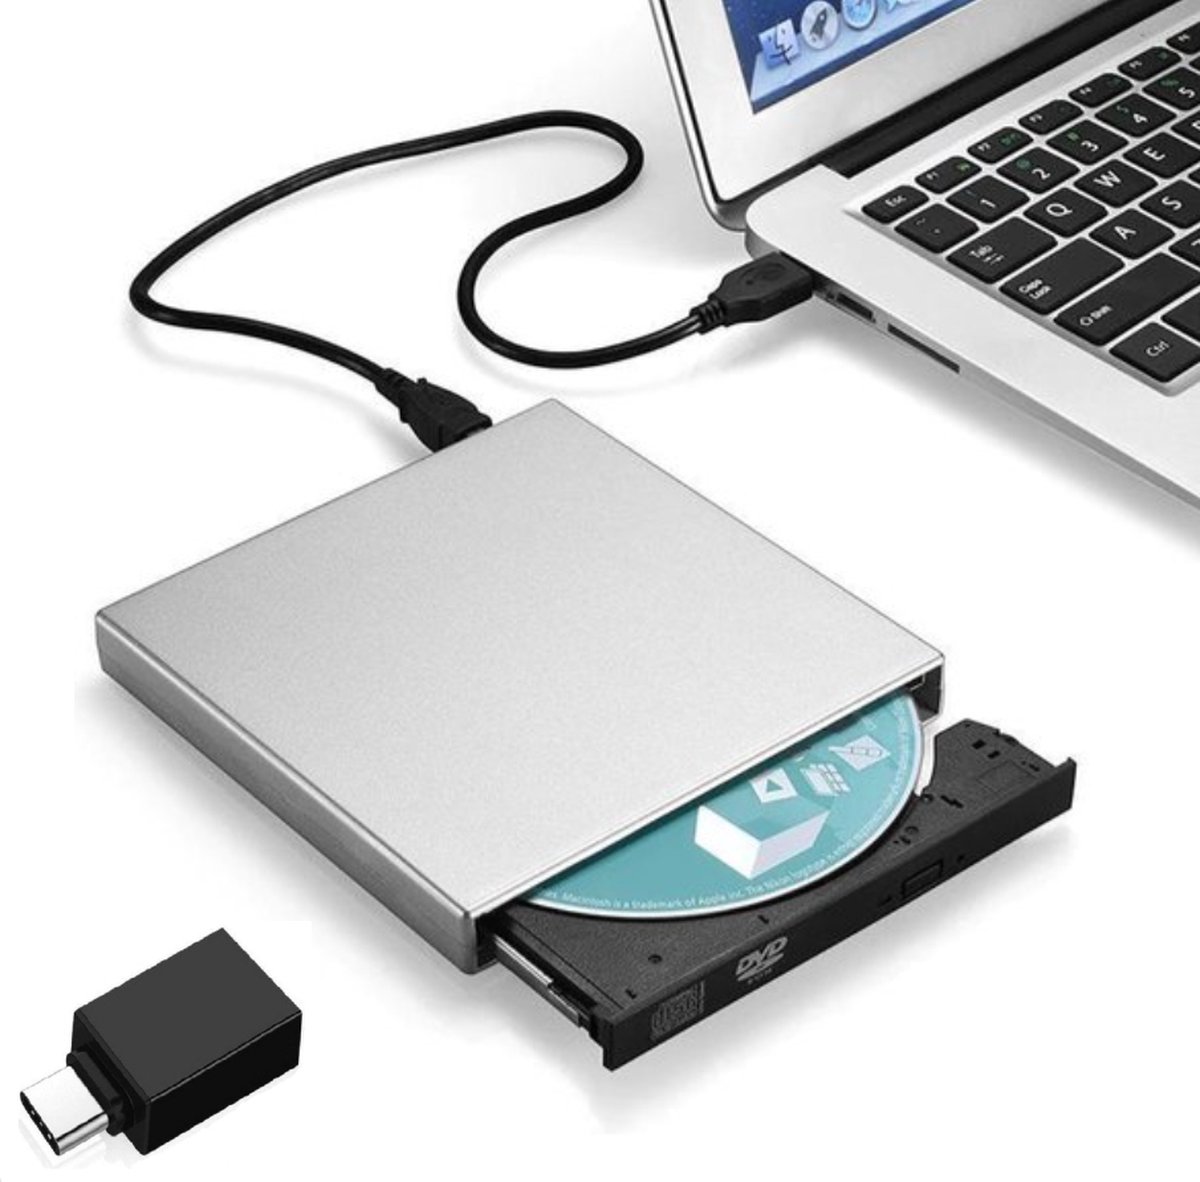 CD-ROM Speler Externe Dvd Usb 2.0 DVD-ROM Drivecd Rw Optische Drive Recorder Draagbare Voor Macbook Laptop Computer Pc Windows 7/8